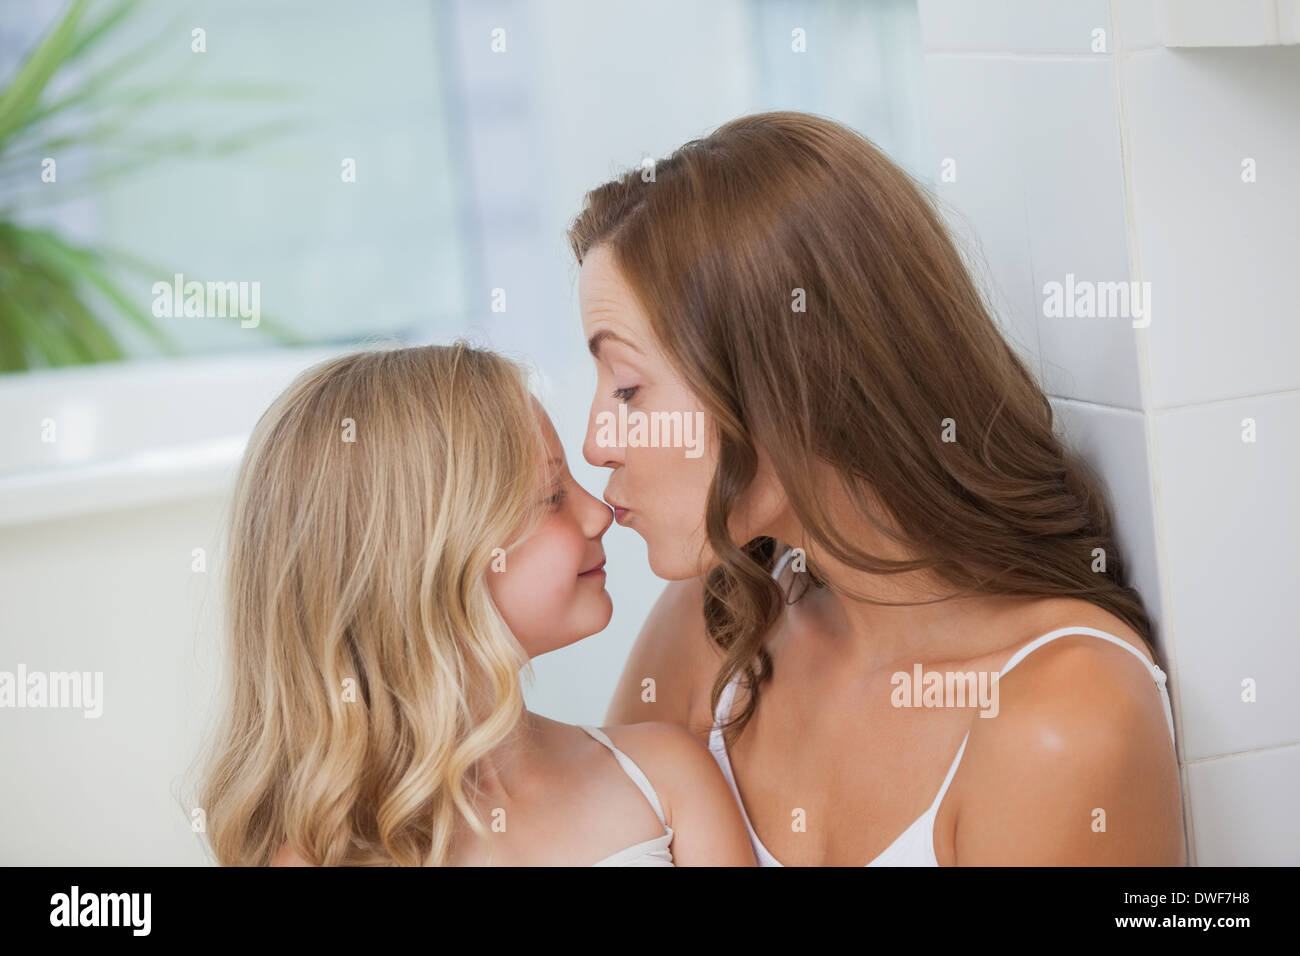 Лесбиянки мама дочка подруга. Мать целует дочь. Мама с дочкой поцелуй. Малыши лесбияночки. Мама и дочь поцелуй с языком.